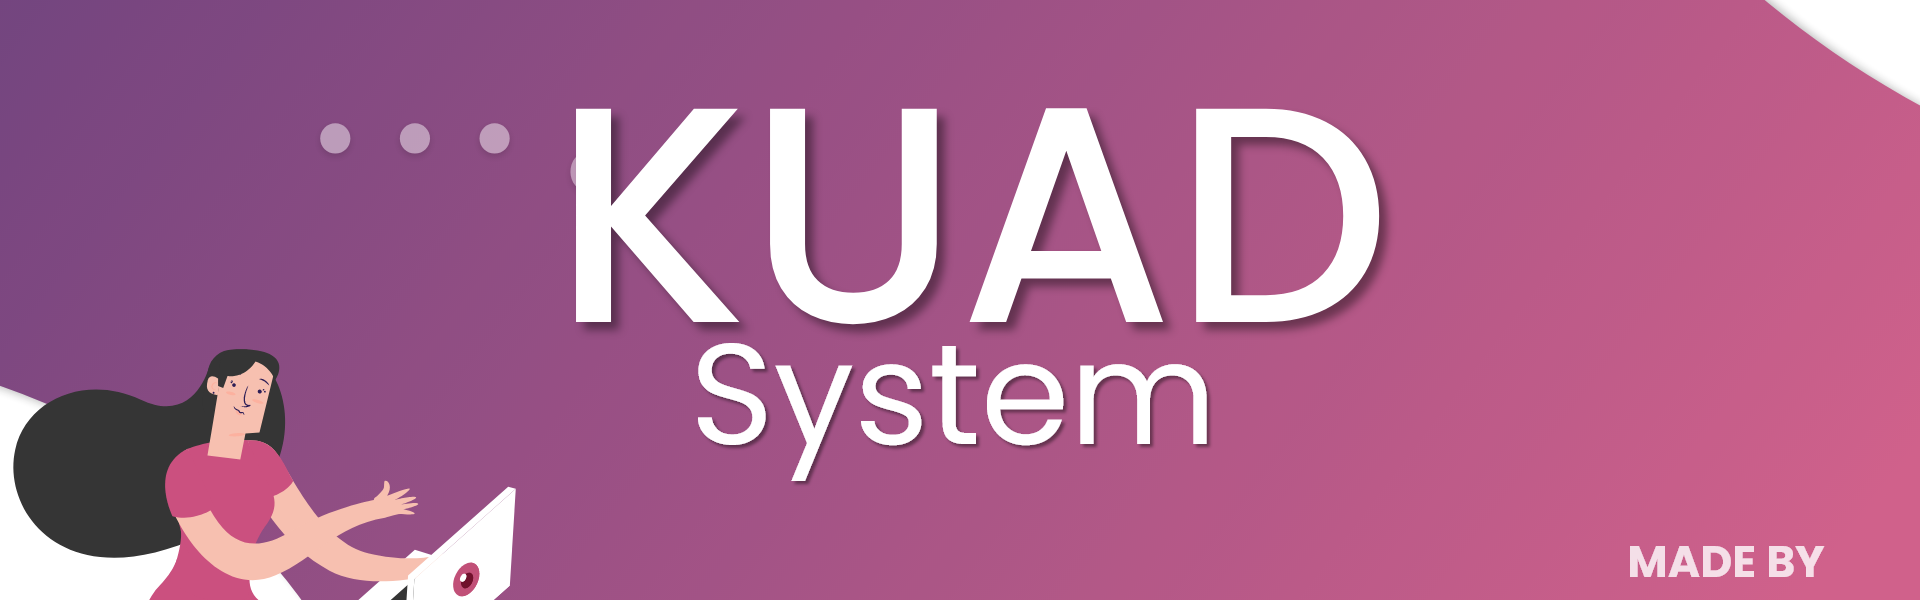 Ya tienes tu sitio integrado con KUAD System y deseas mas visitantes thumbnail